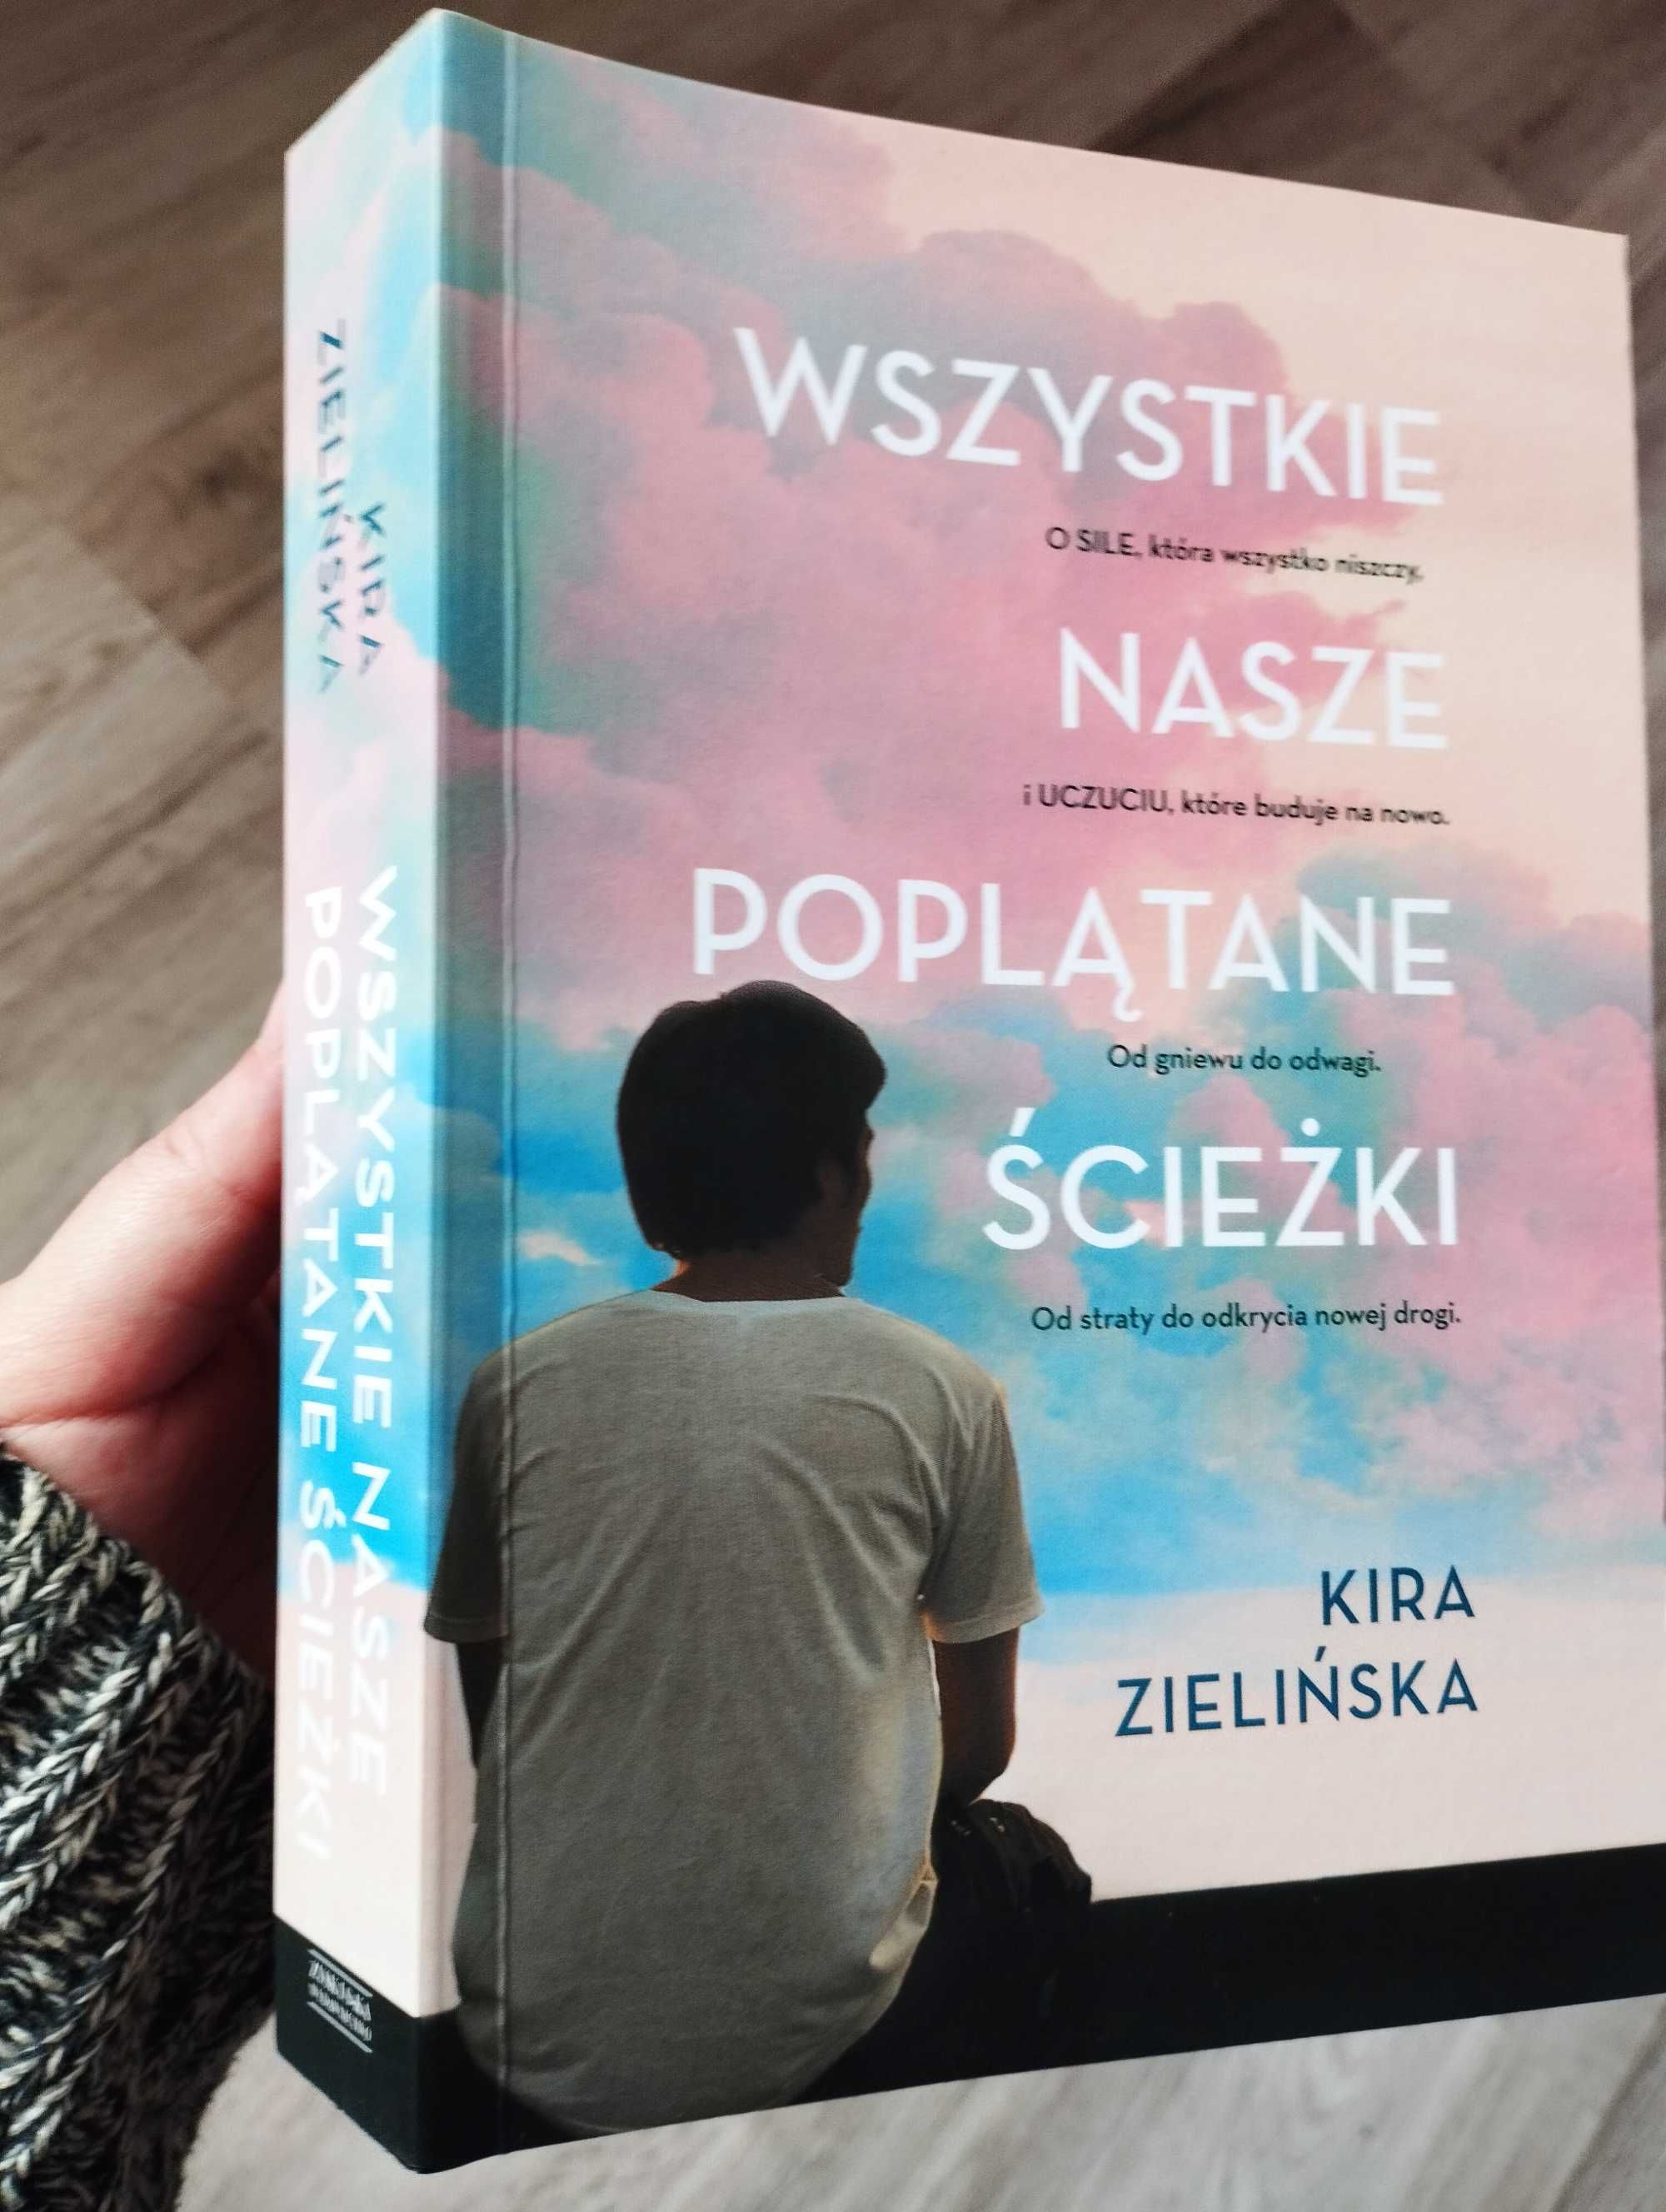 Książka powieść wszystkie nasze poplątane ścieżki Kira Zielińska